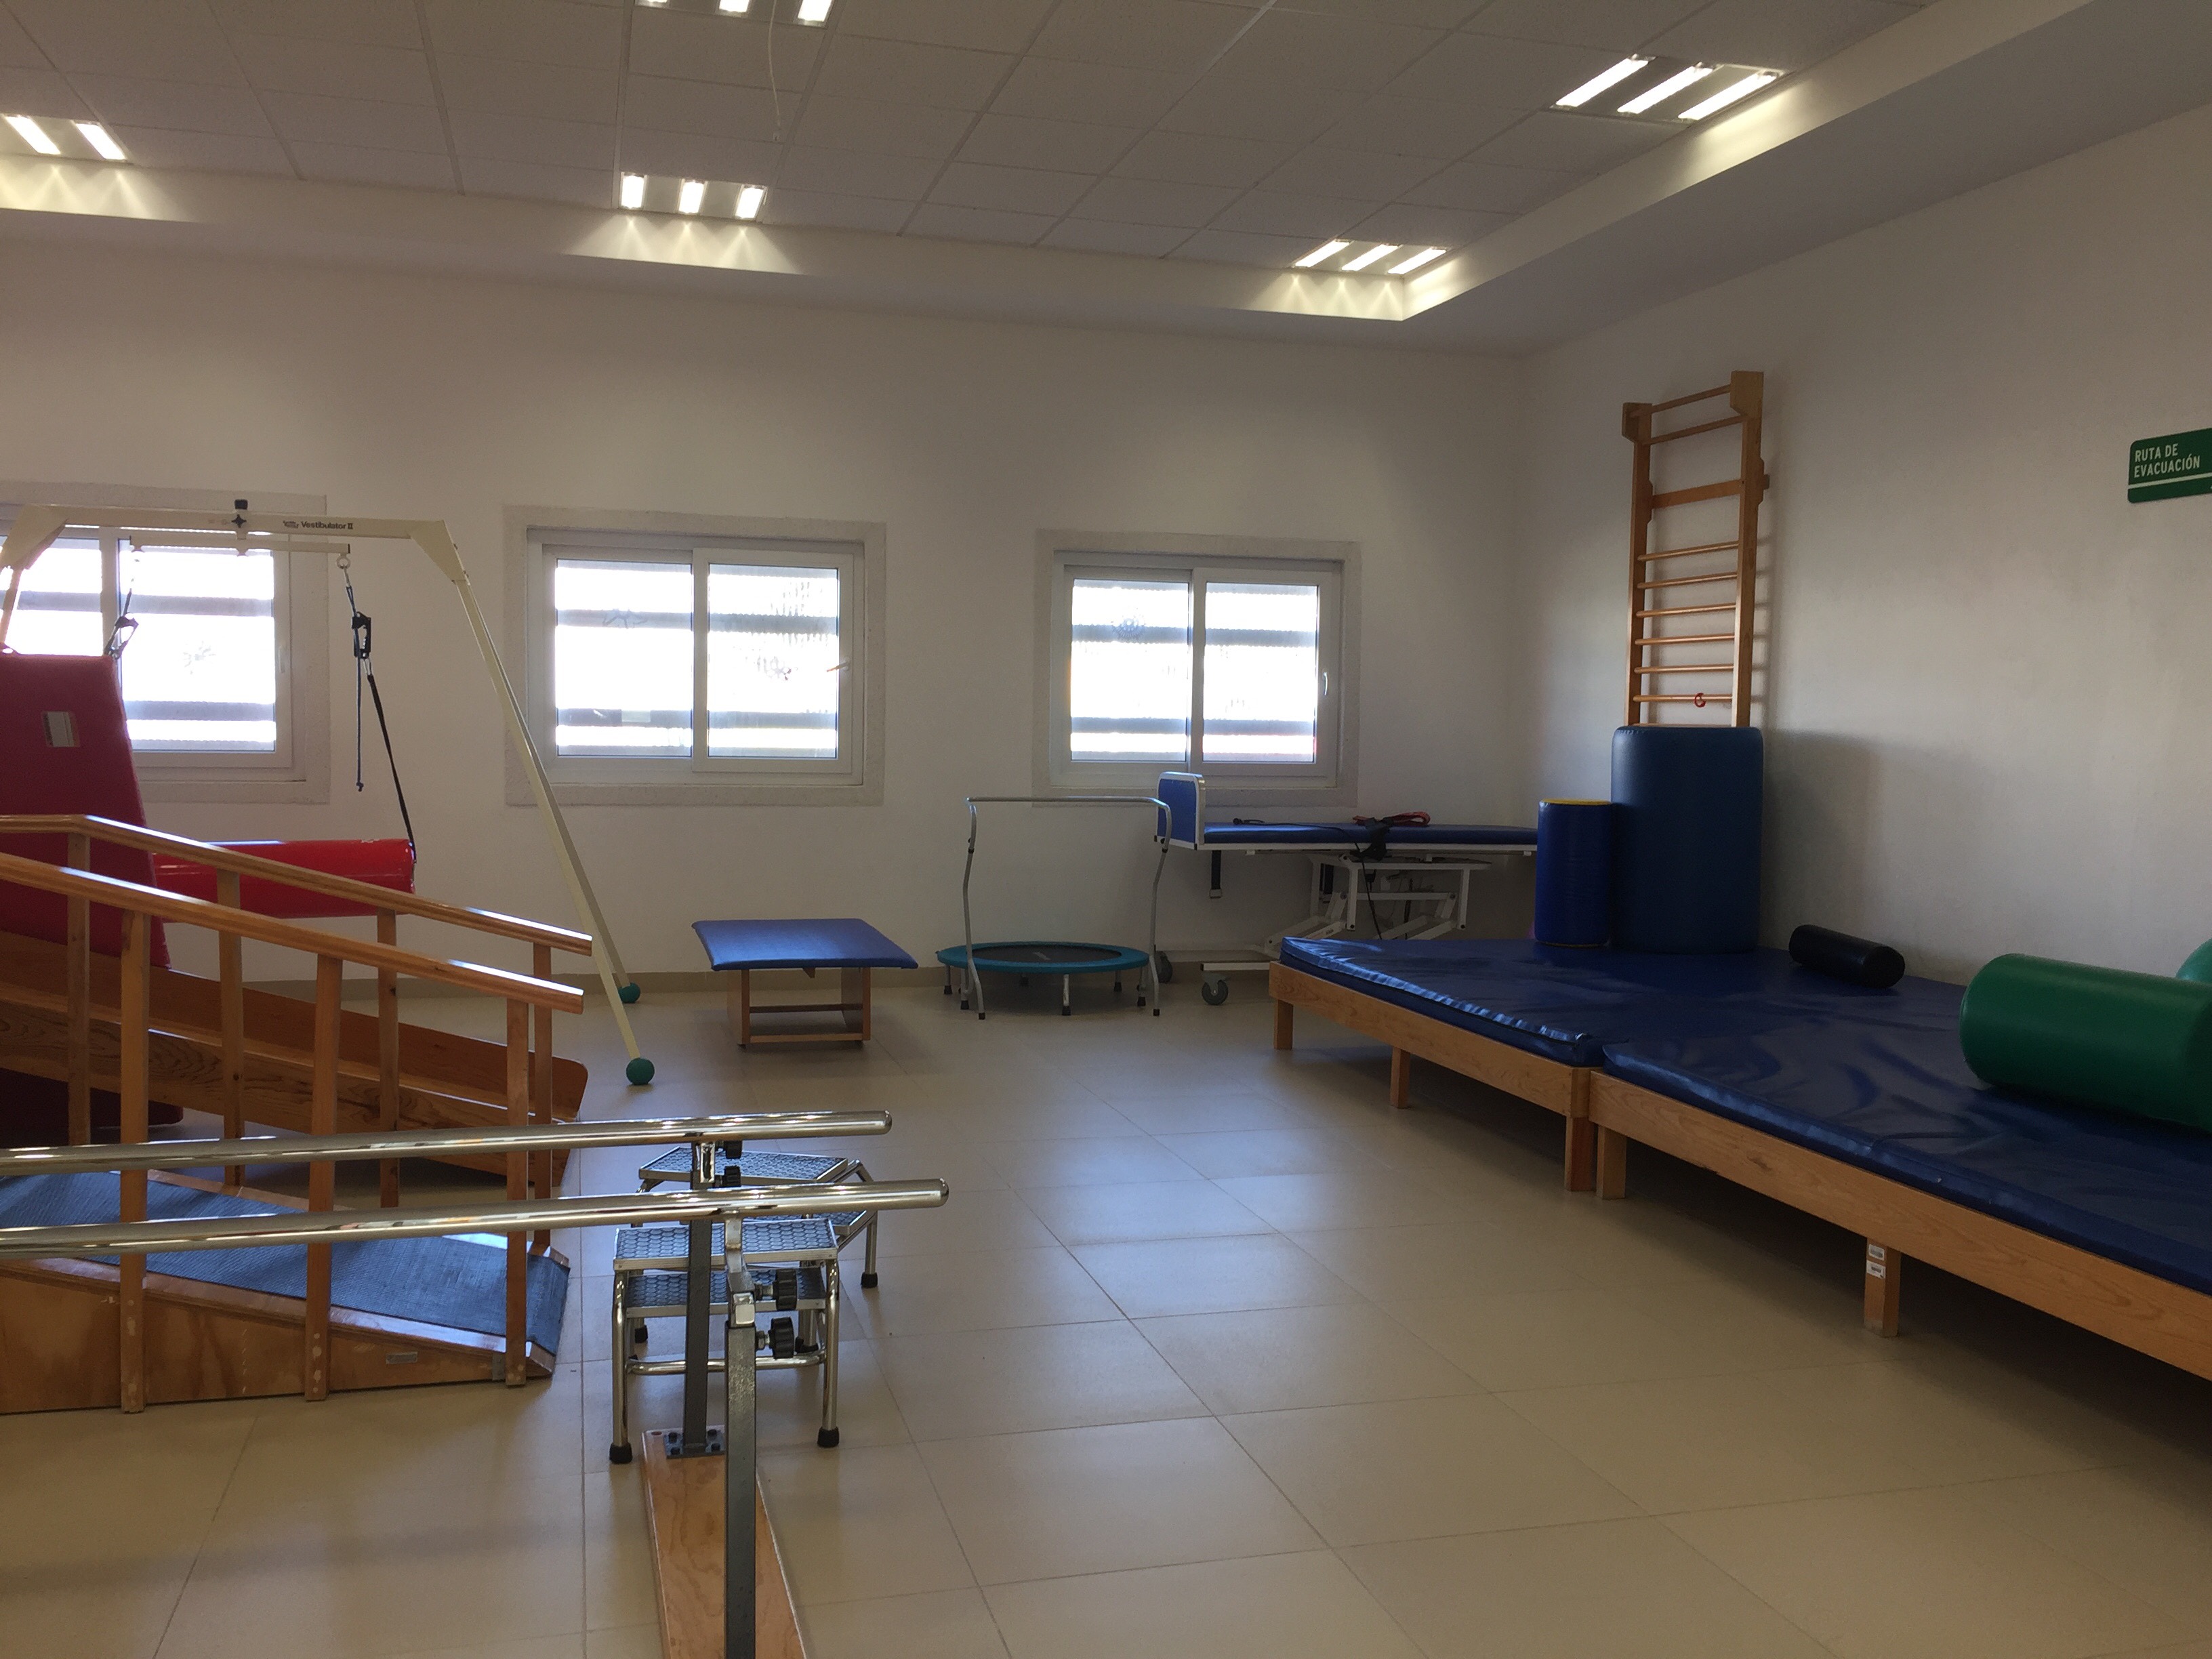  Más de 505 personas reciben atención en el Centro Integral de Rehabilitación Regional (CIRR) de Santa Rosa Jáuregui